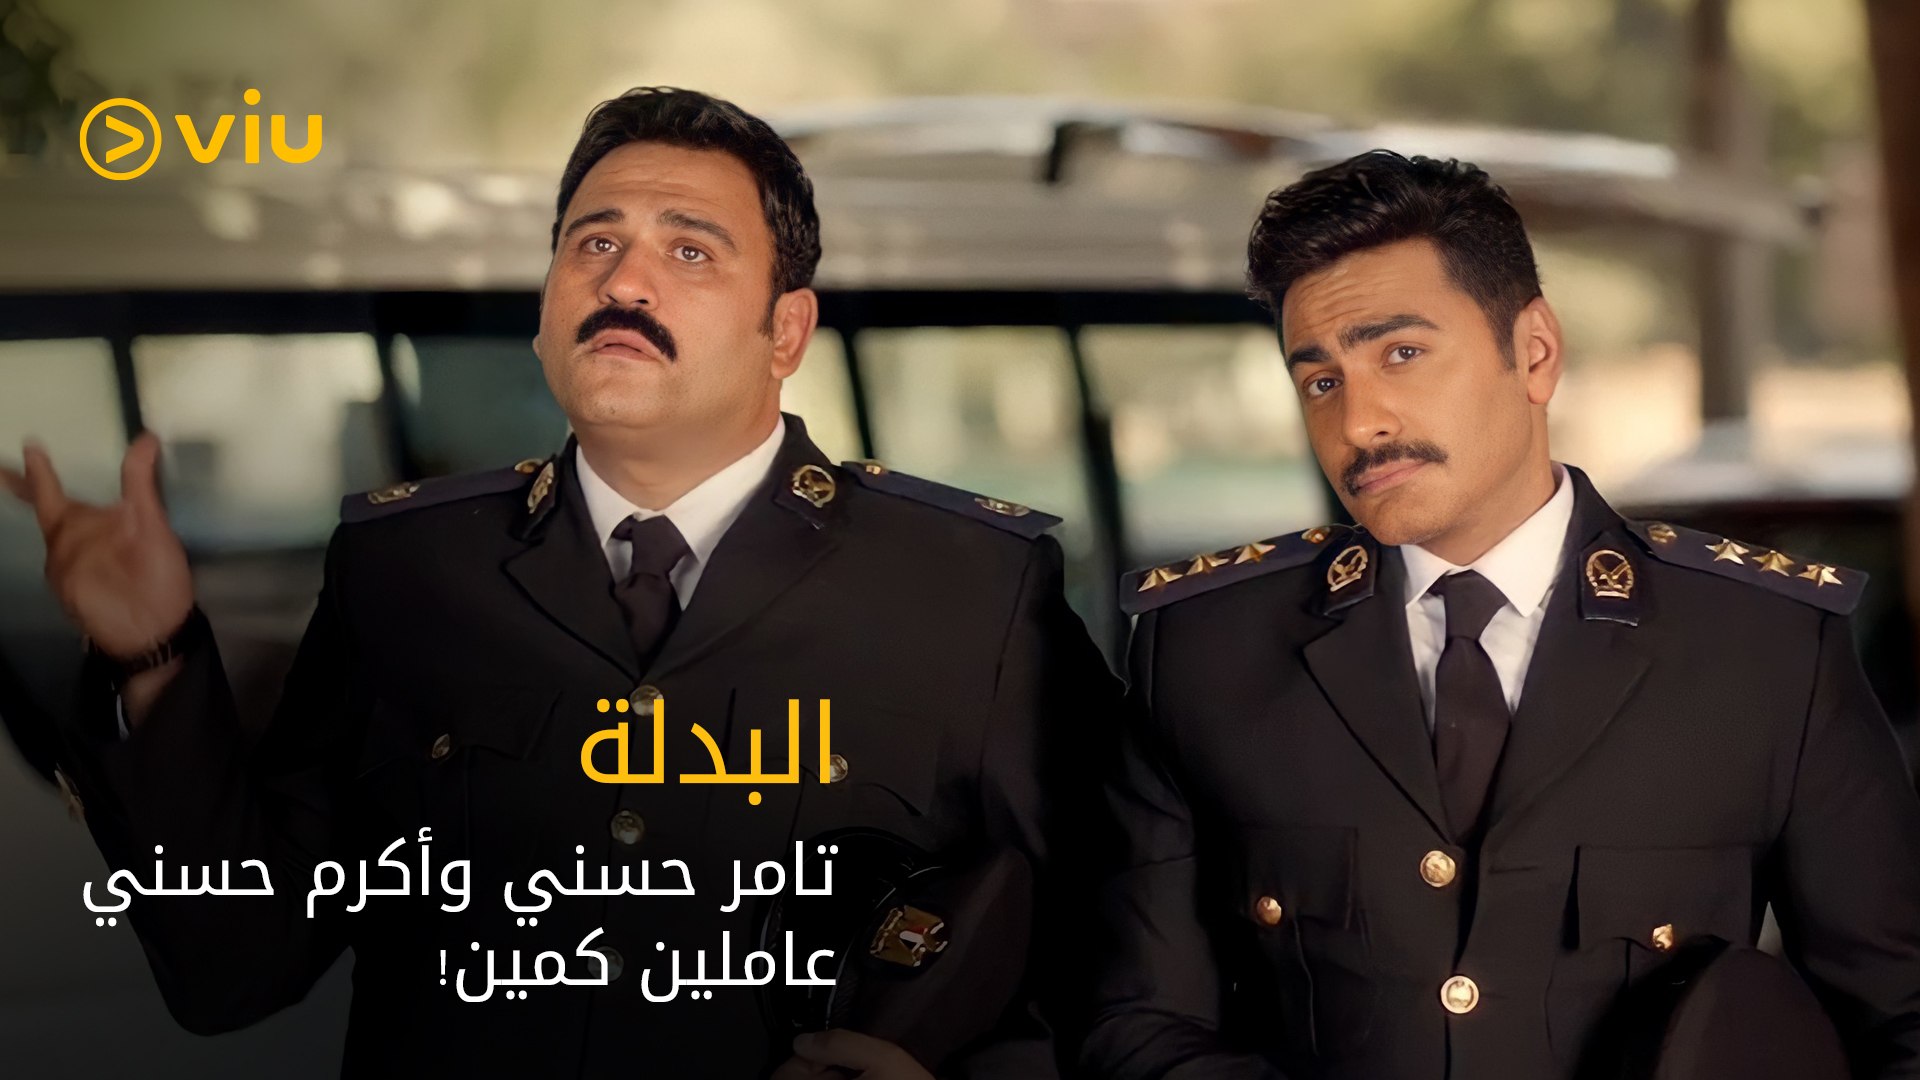 فيلم البدلة | أكرم حسني وتامر حسني عاملين كمين! - video Dailymotion